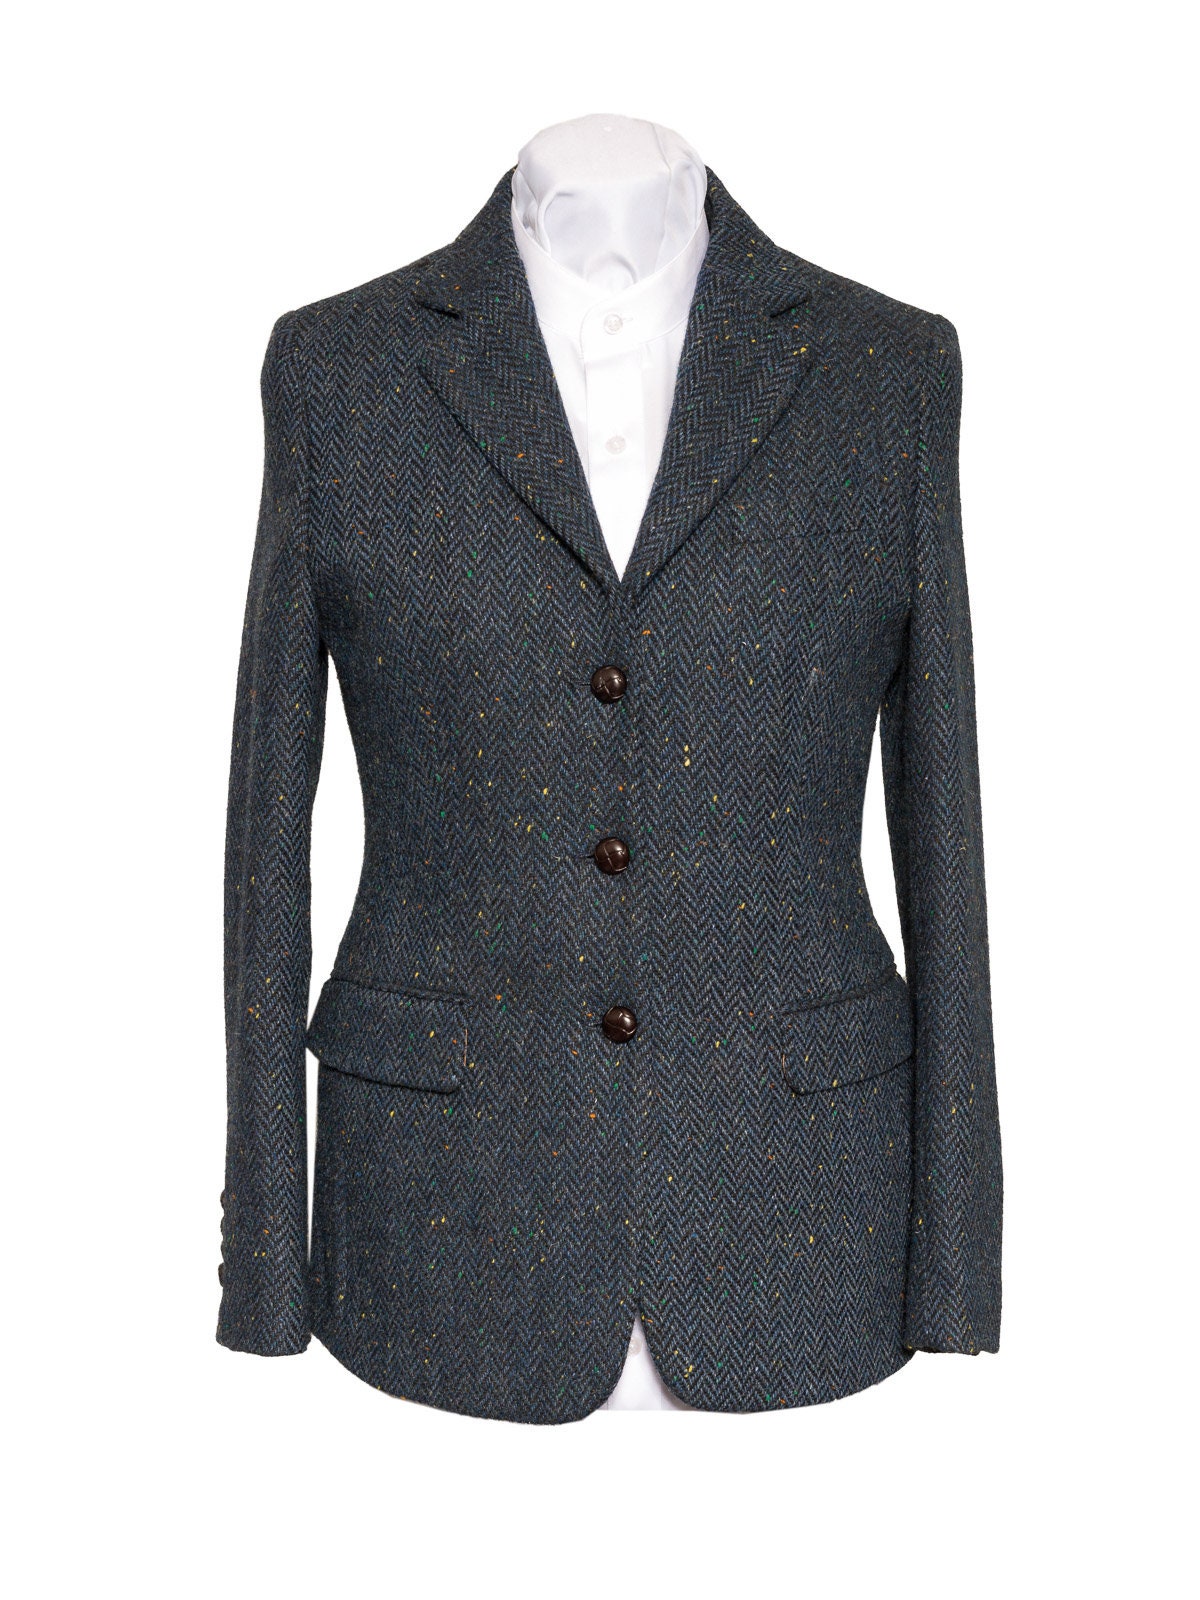 Women's Blue Herringbone Tweed Jacket the Waterford - Etsy UK